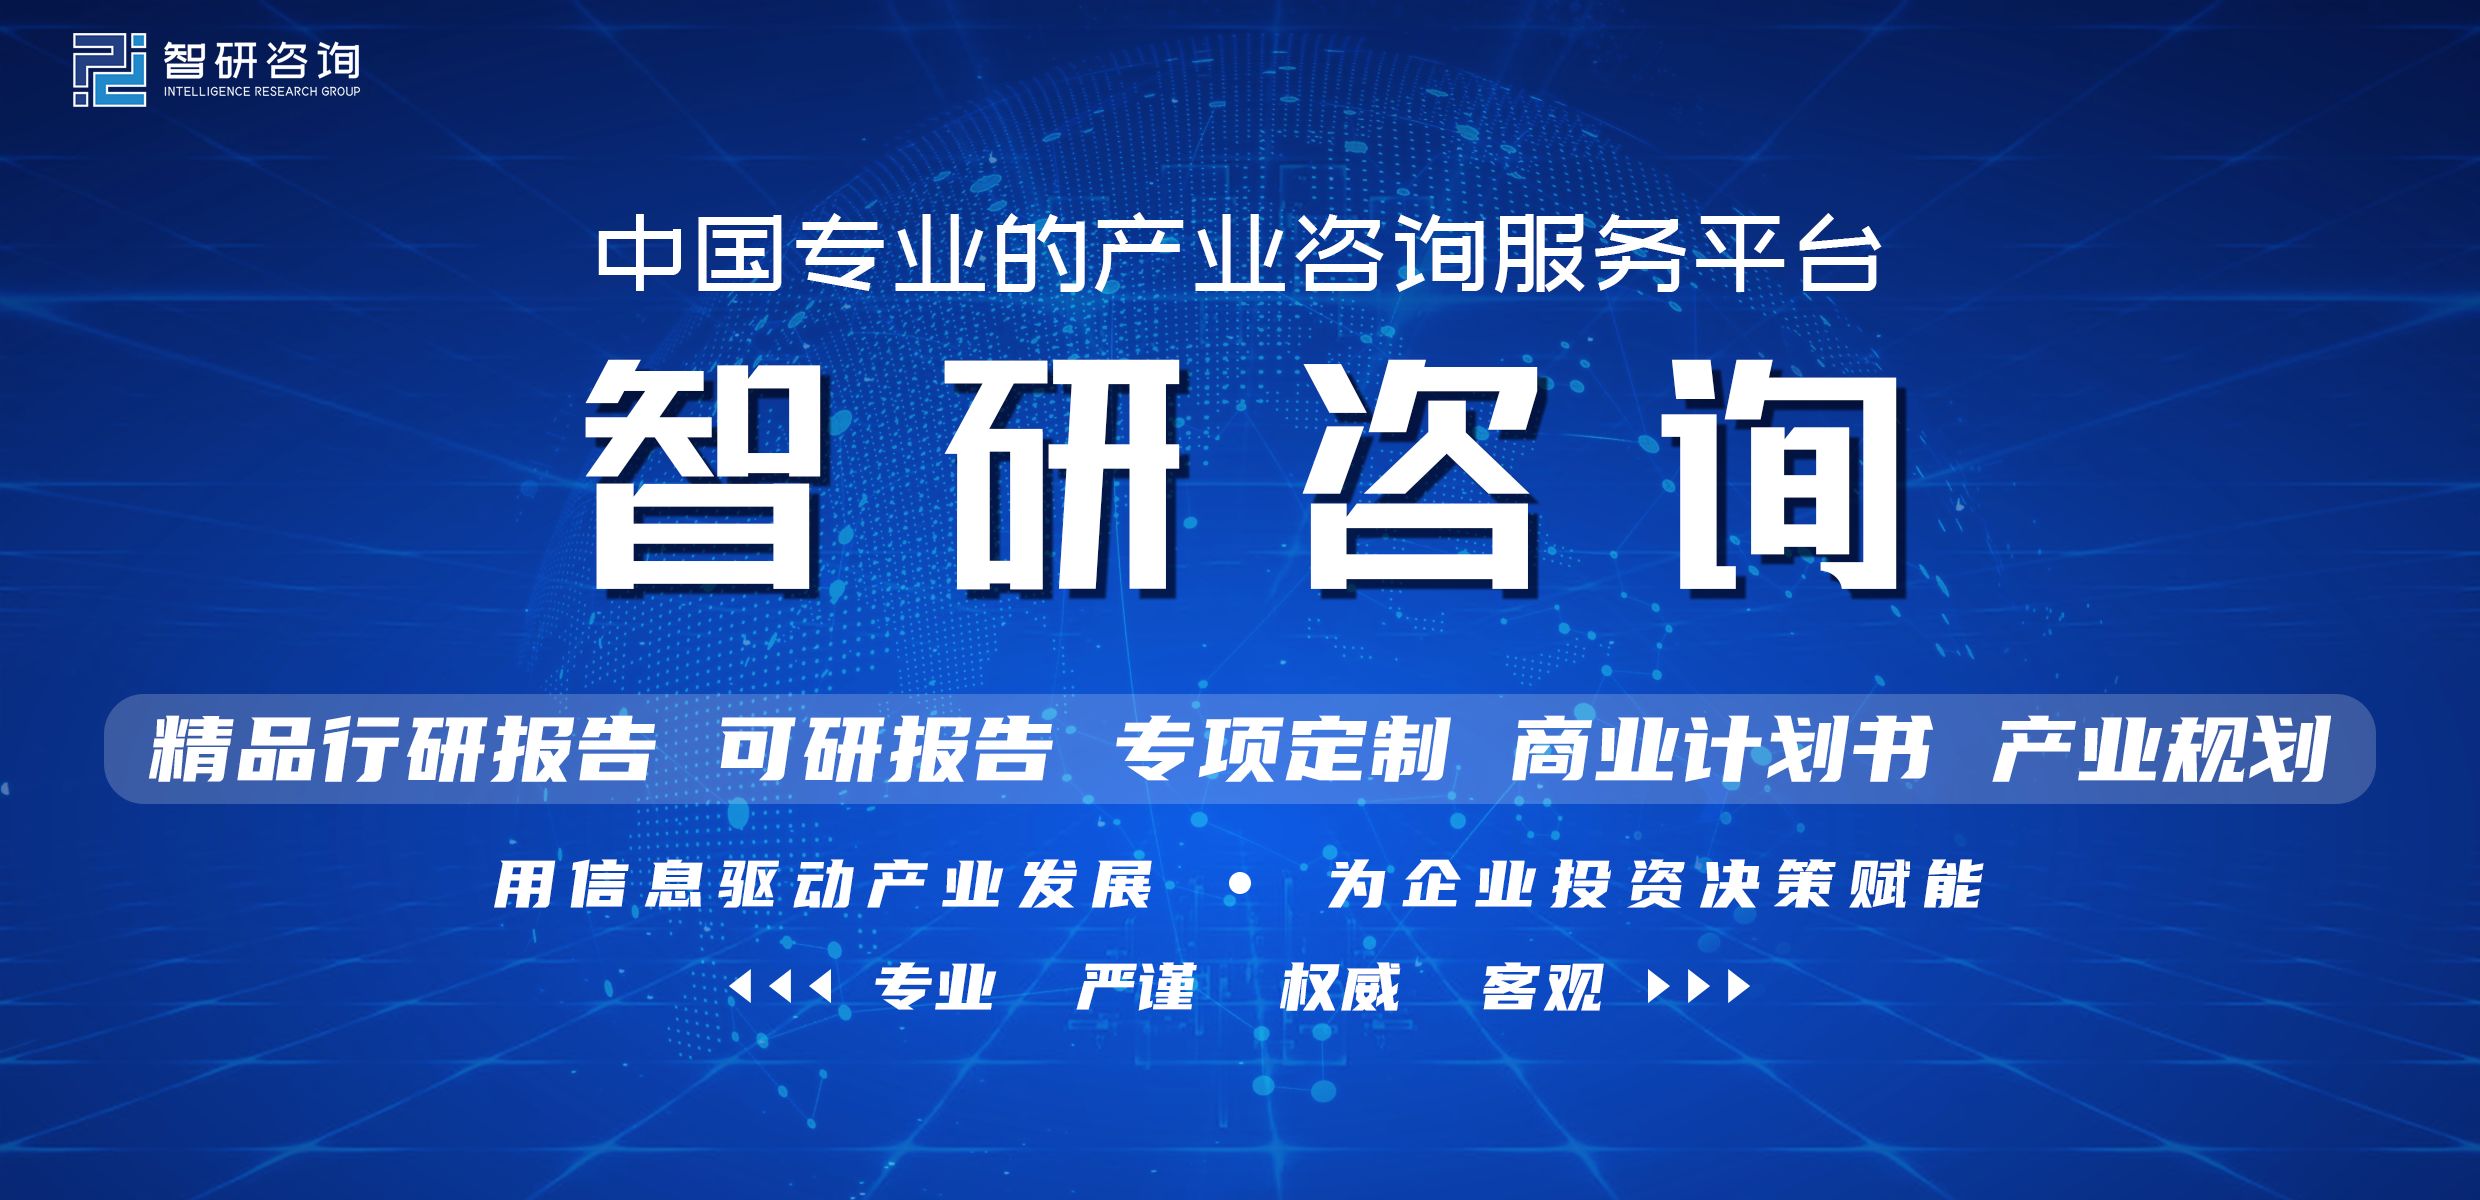 中国互联网+保险行业市场深度分析及投资方向研究报告-1.jpg